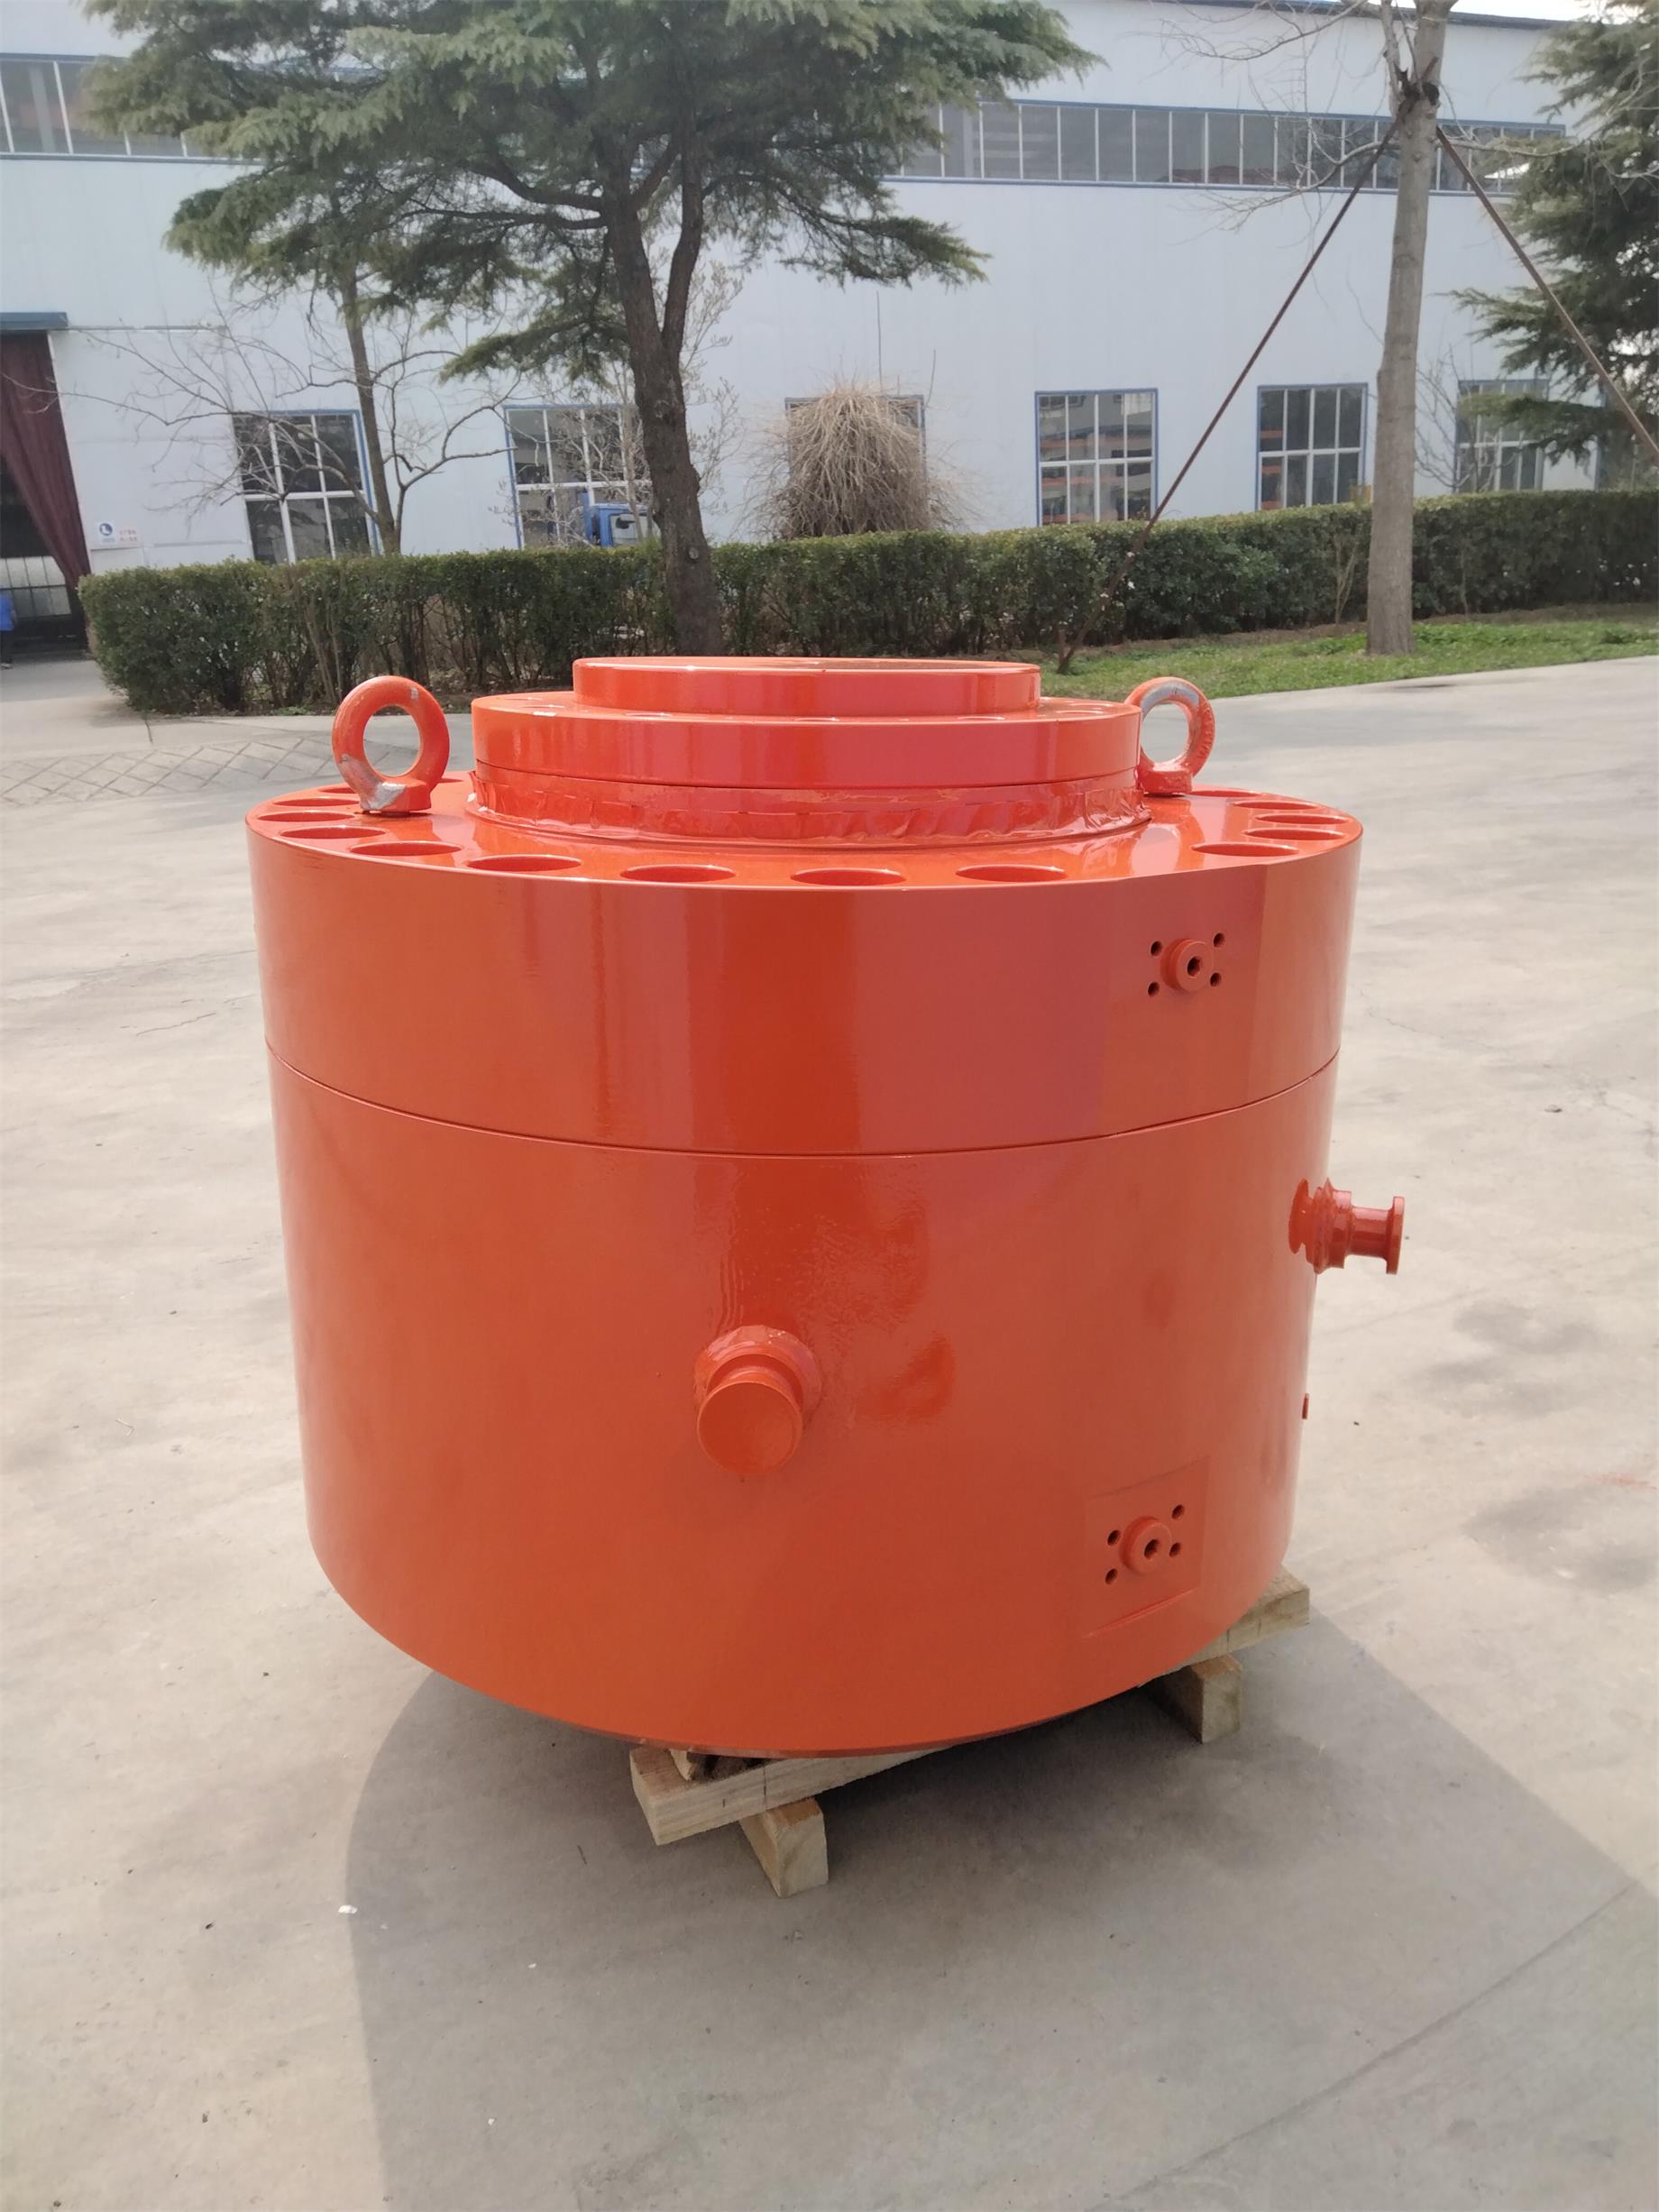 北京AGC伺服液壓缸